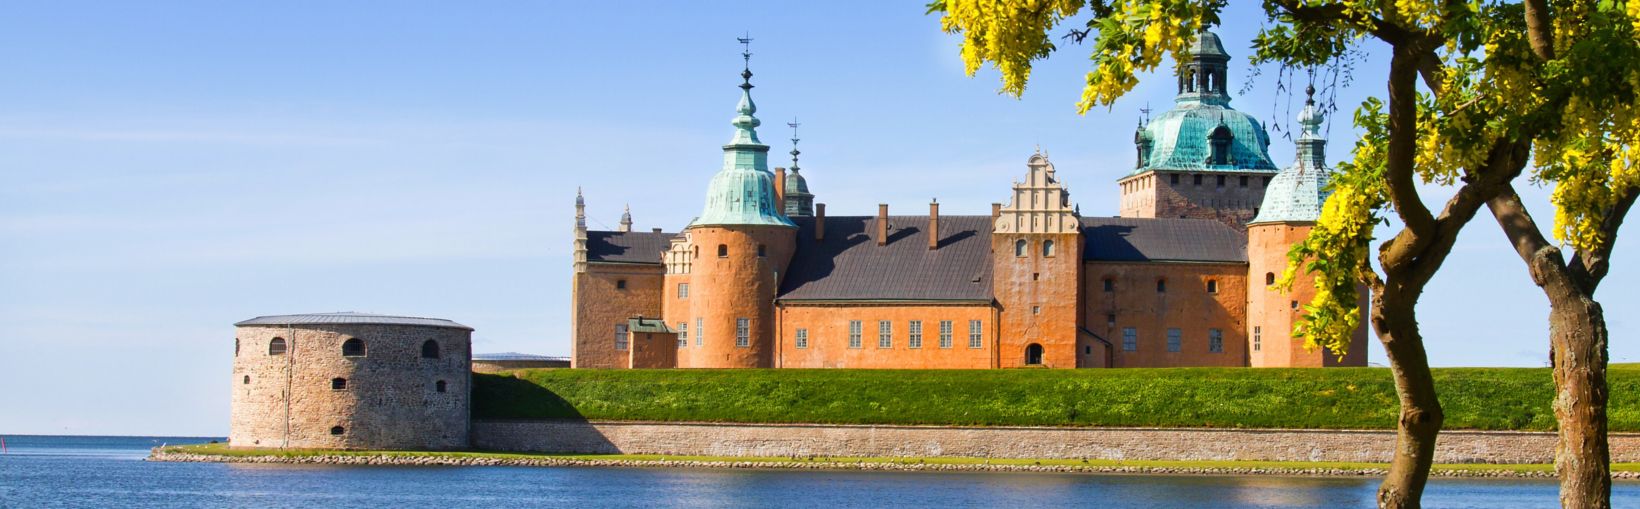 Viduramžių pilis su raudonomis sienomis ir mėlynais bokšteliais, apsupta vandens giedrą saulėtą dieną Kalmare, Švedijoje.